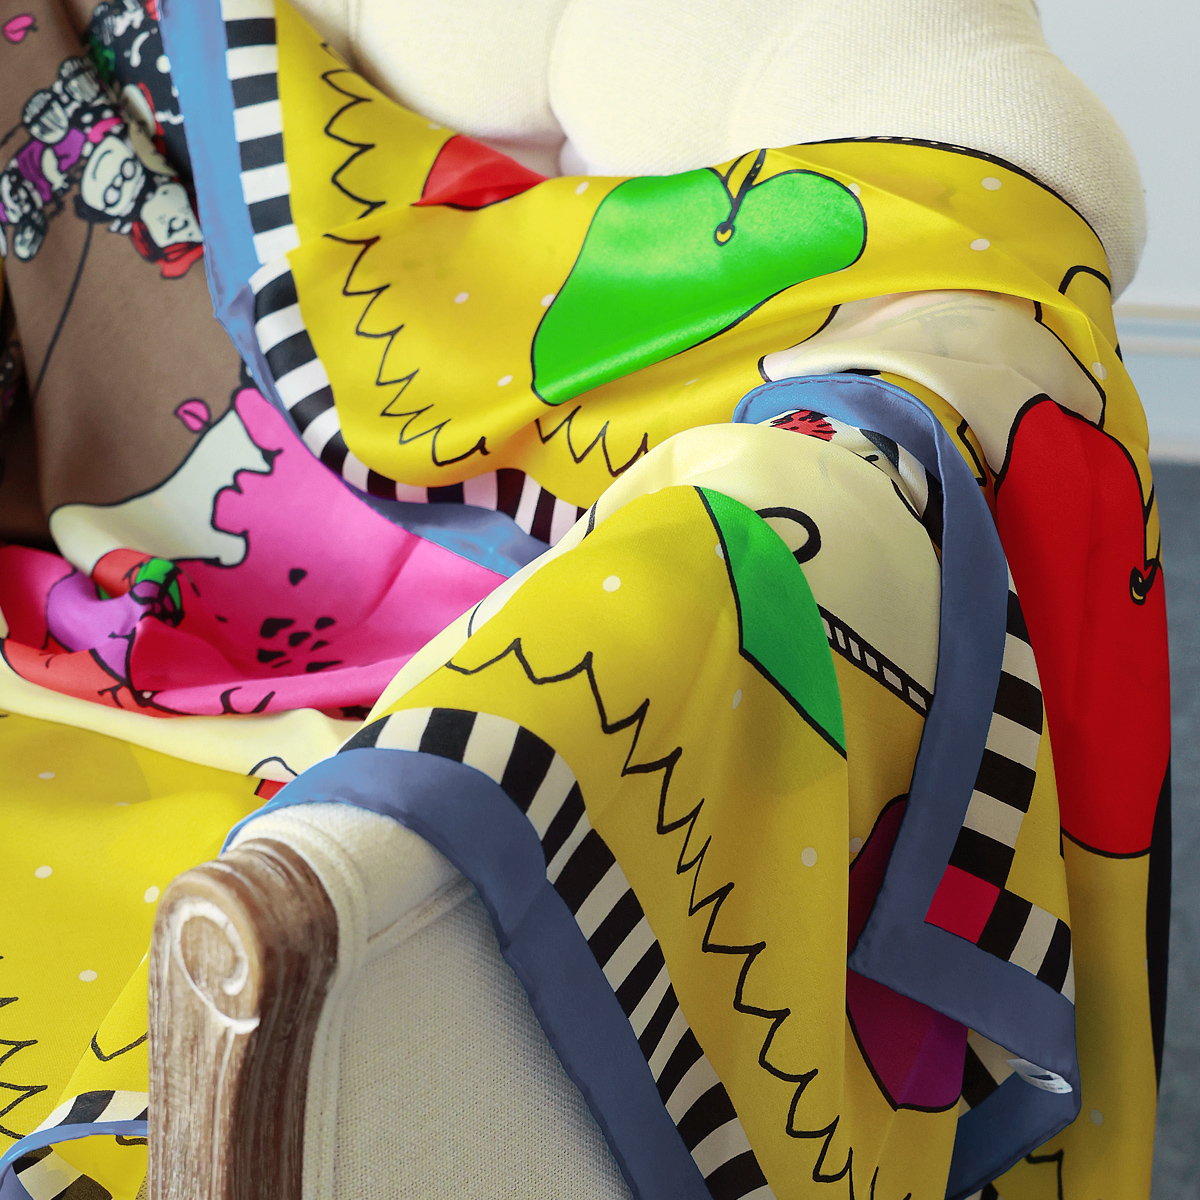 客供真丝 先锋秀场展示款童趣欧洲设计师巴黎乐园丝巾方巾KAKA